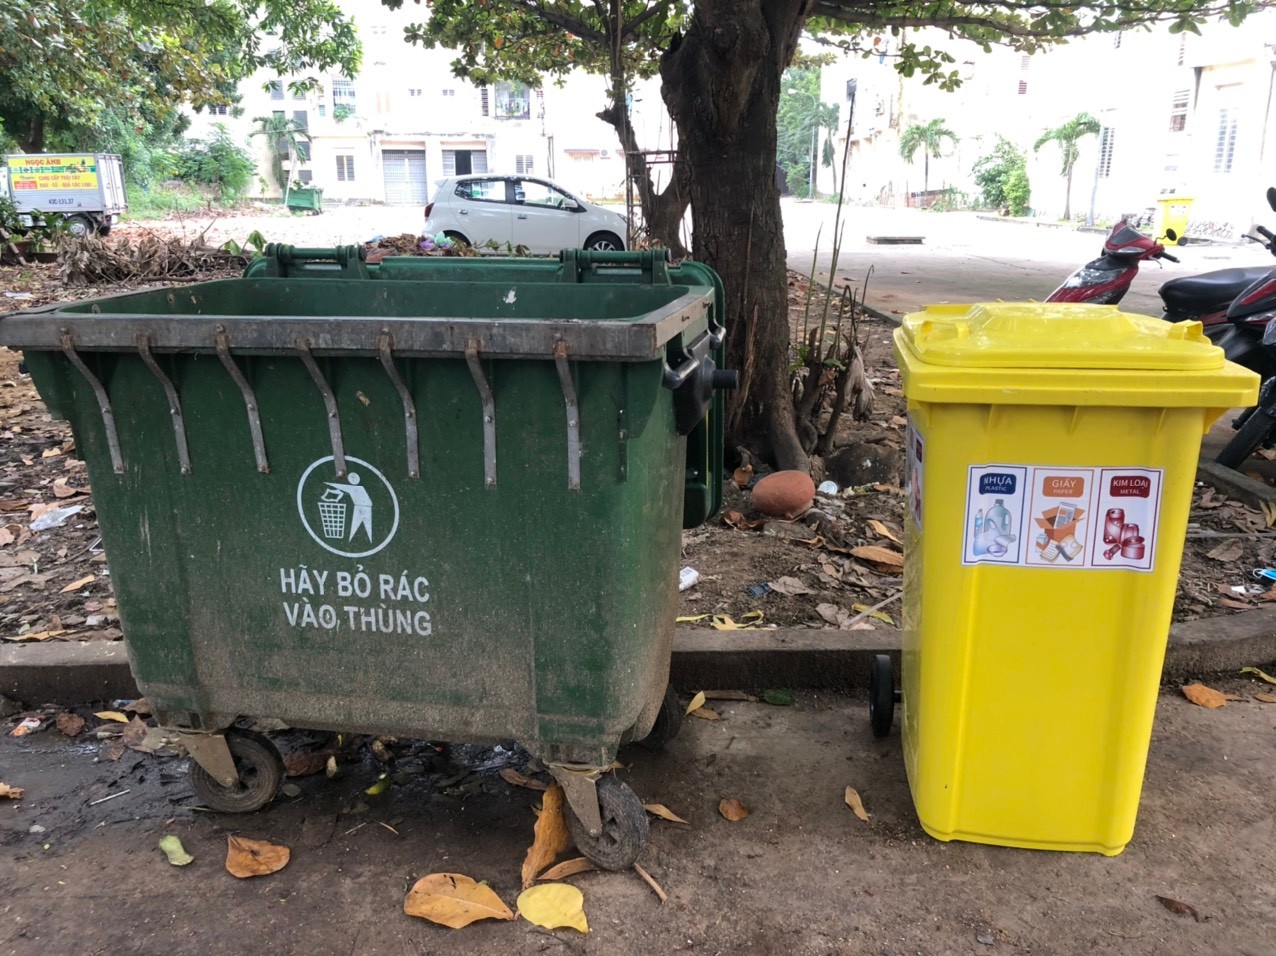 Thử nghiệm phân loại rác tại Đà Nẵng với thùng rác truyền thống (màu xanh) và thùng rác tái chế thông thường (màu vàng) | Ảnh: AccLAB/ UNDP